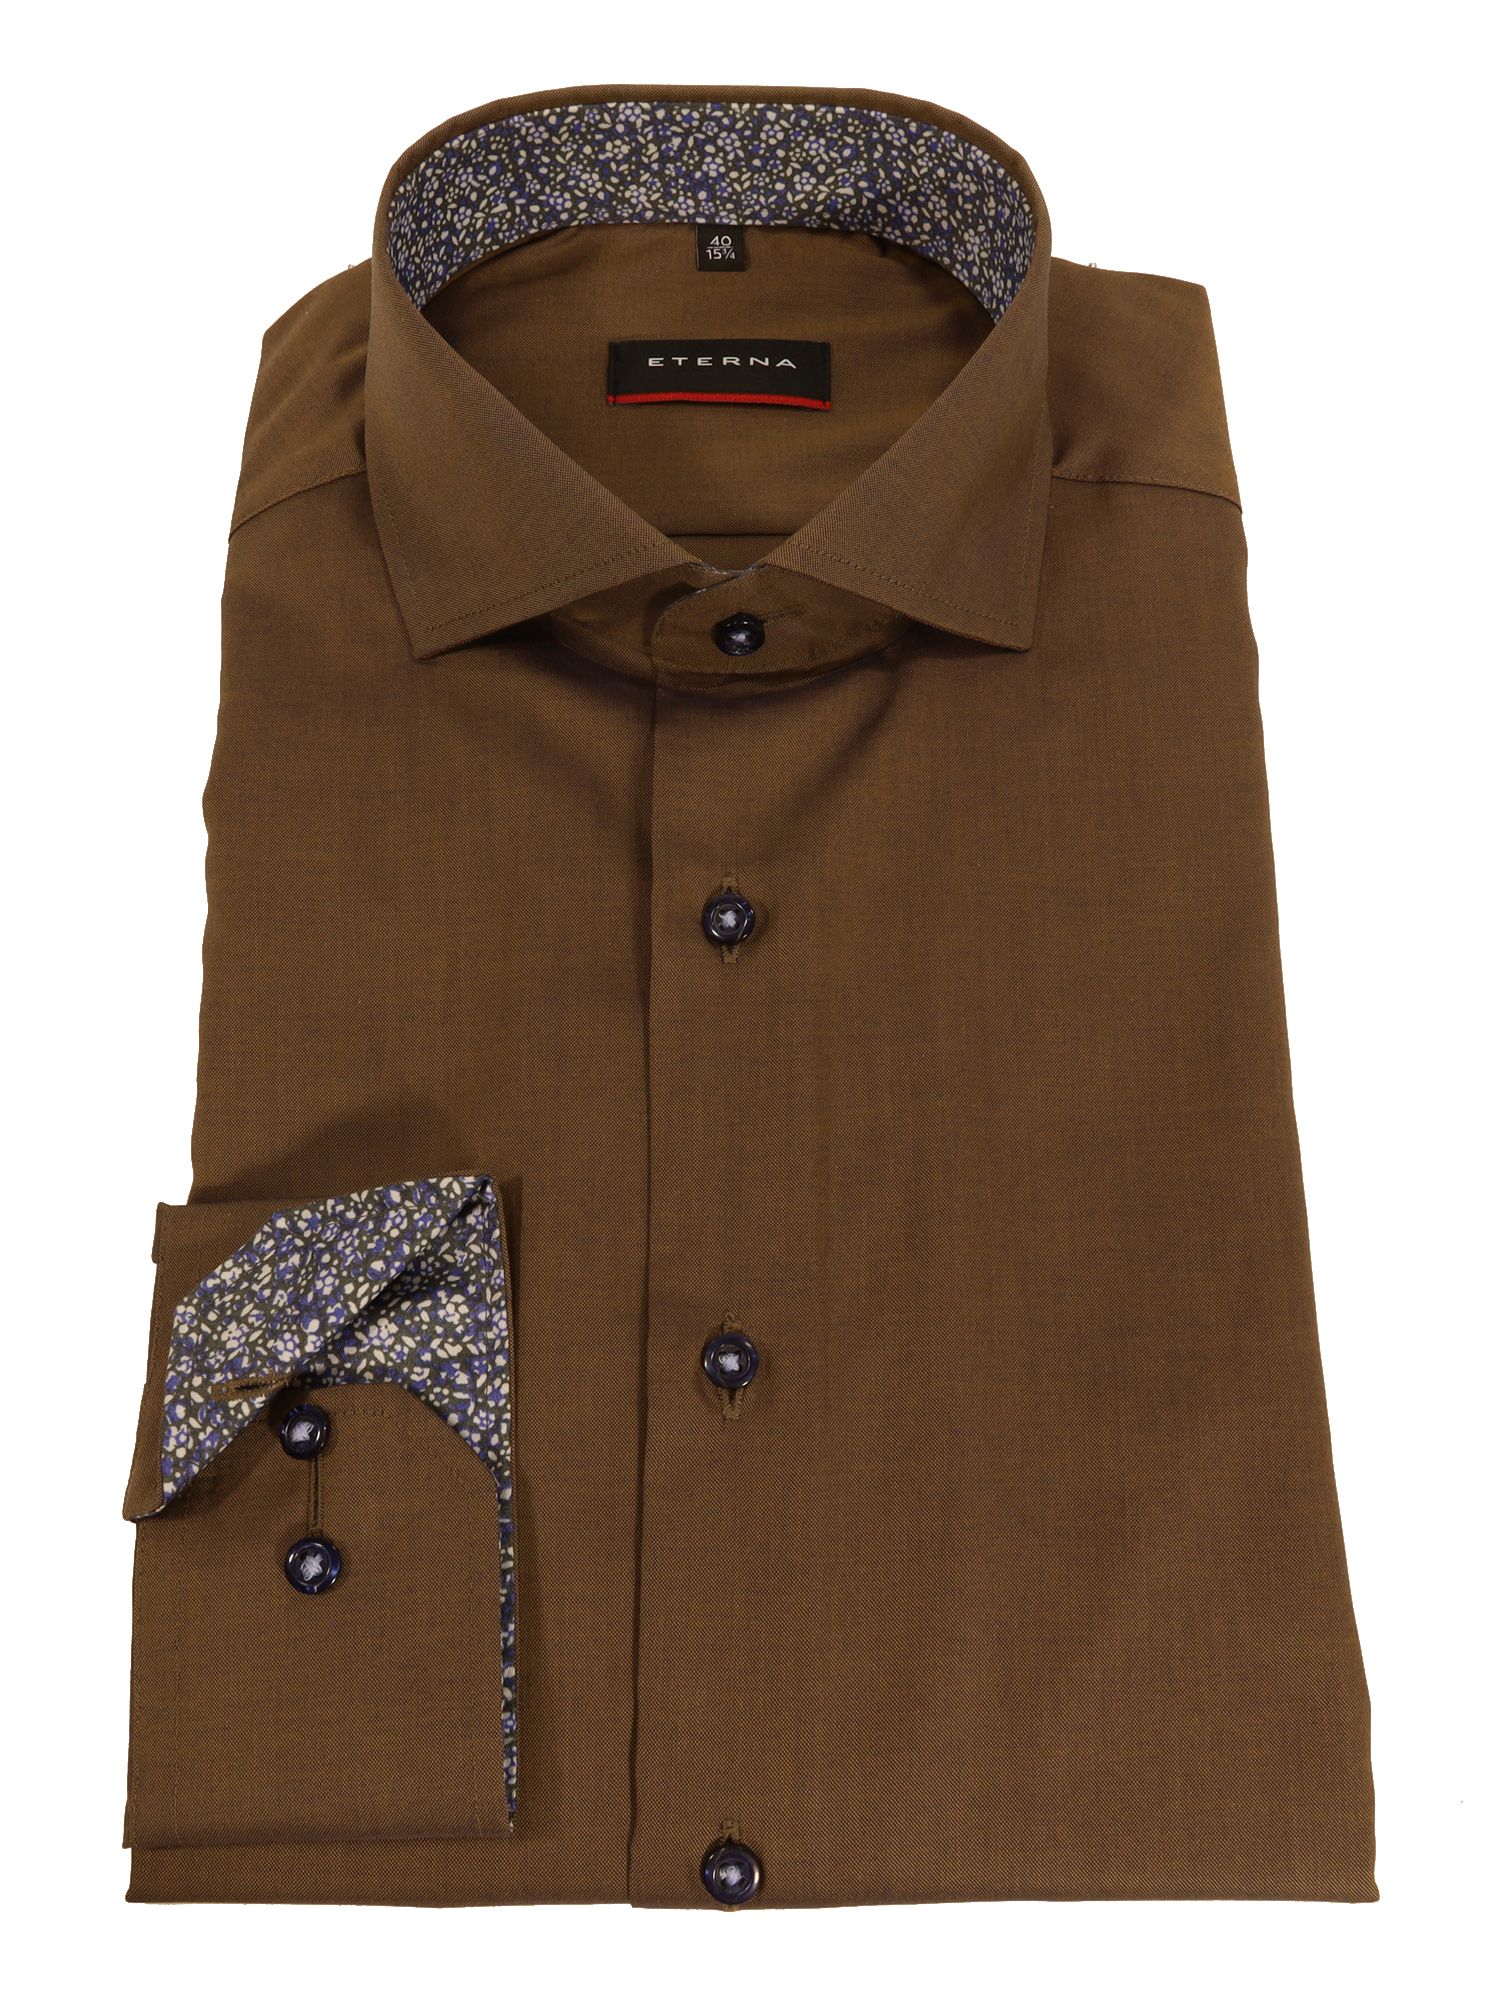 Мужская рубашка ETERNA, коричневая, цвет коричневый, размер 44 - фото 2